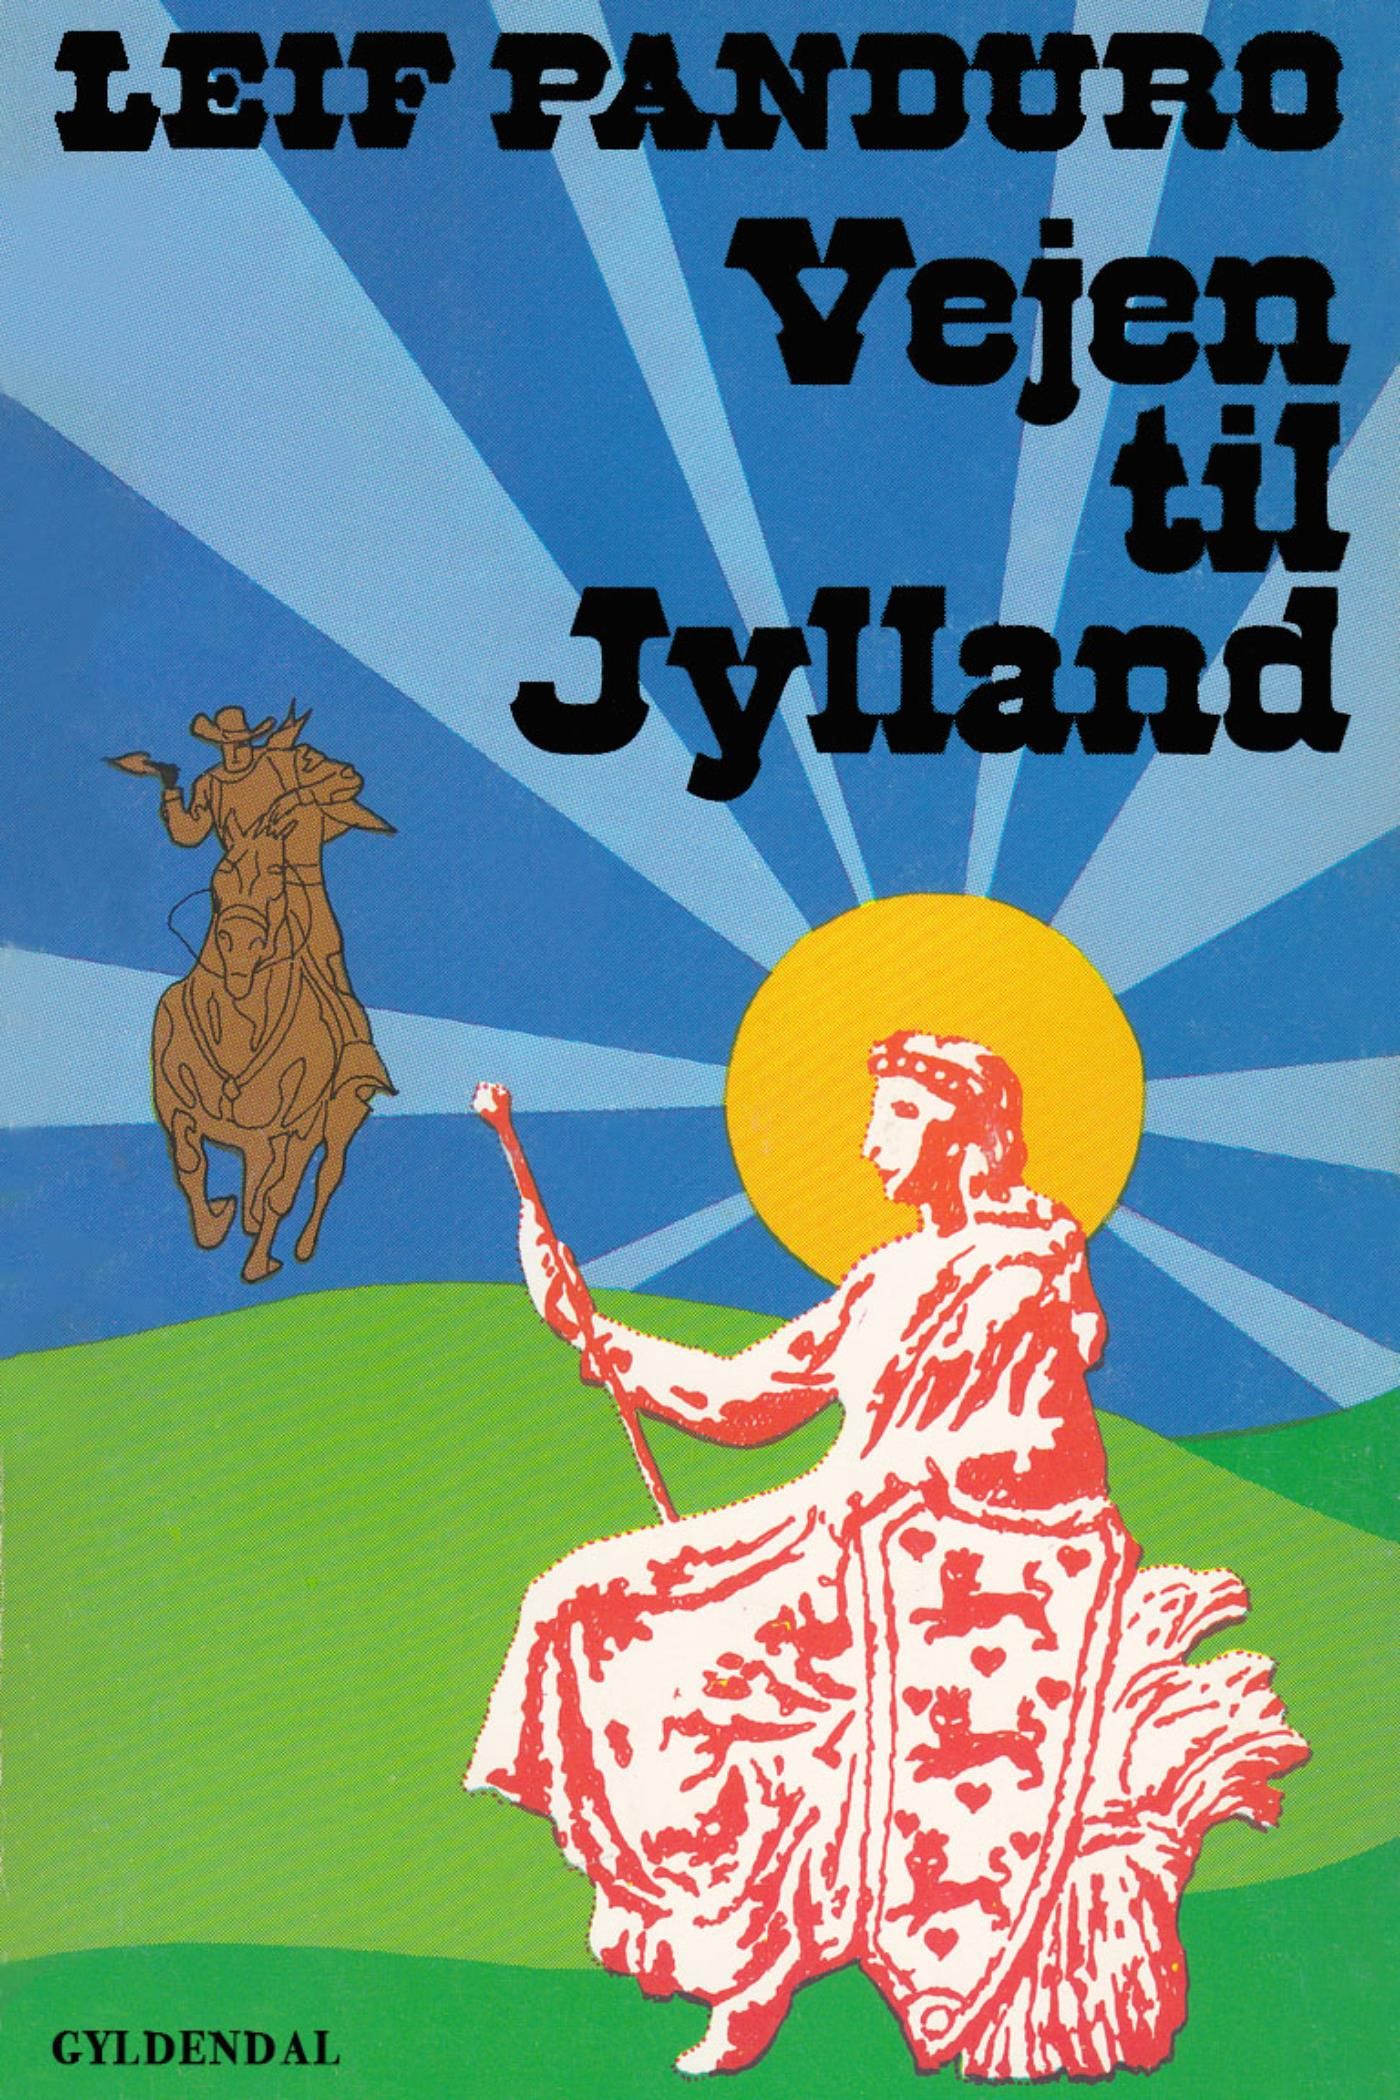 Vejen til Jylland, e-bok av Leif Panduro